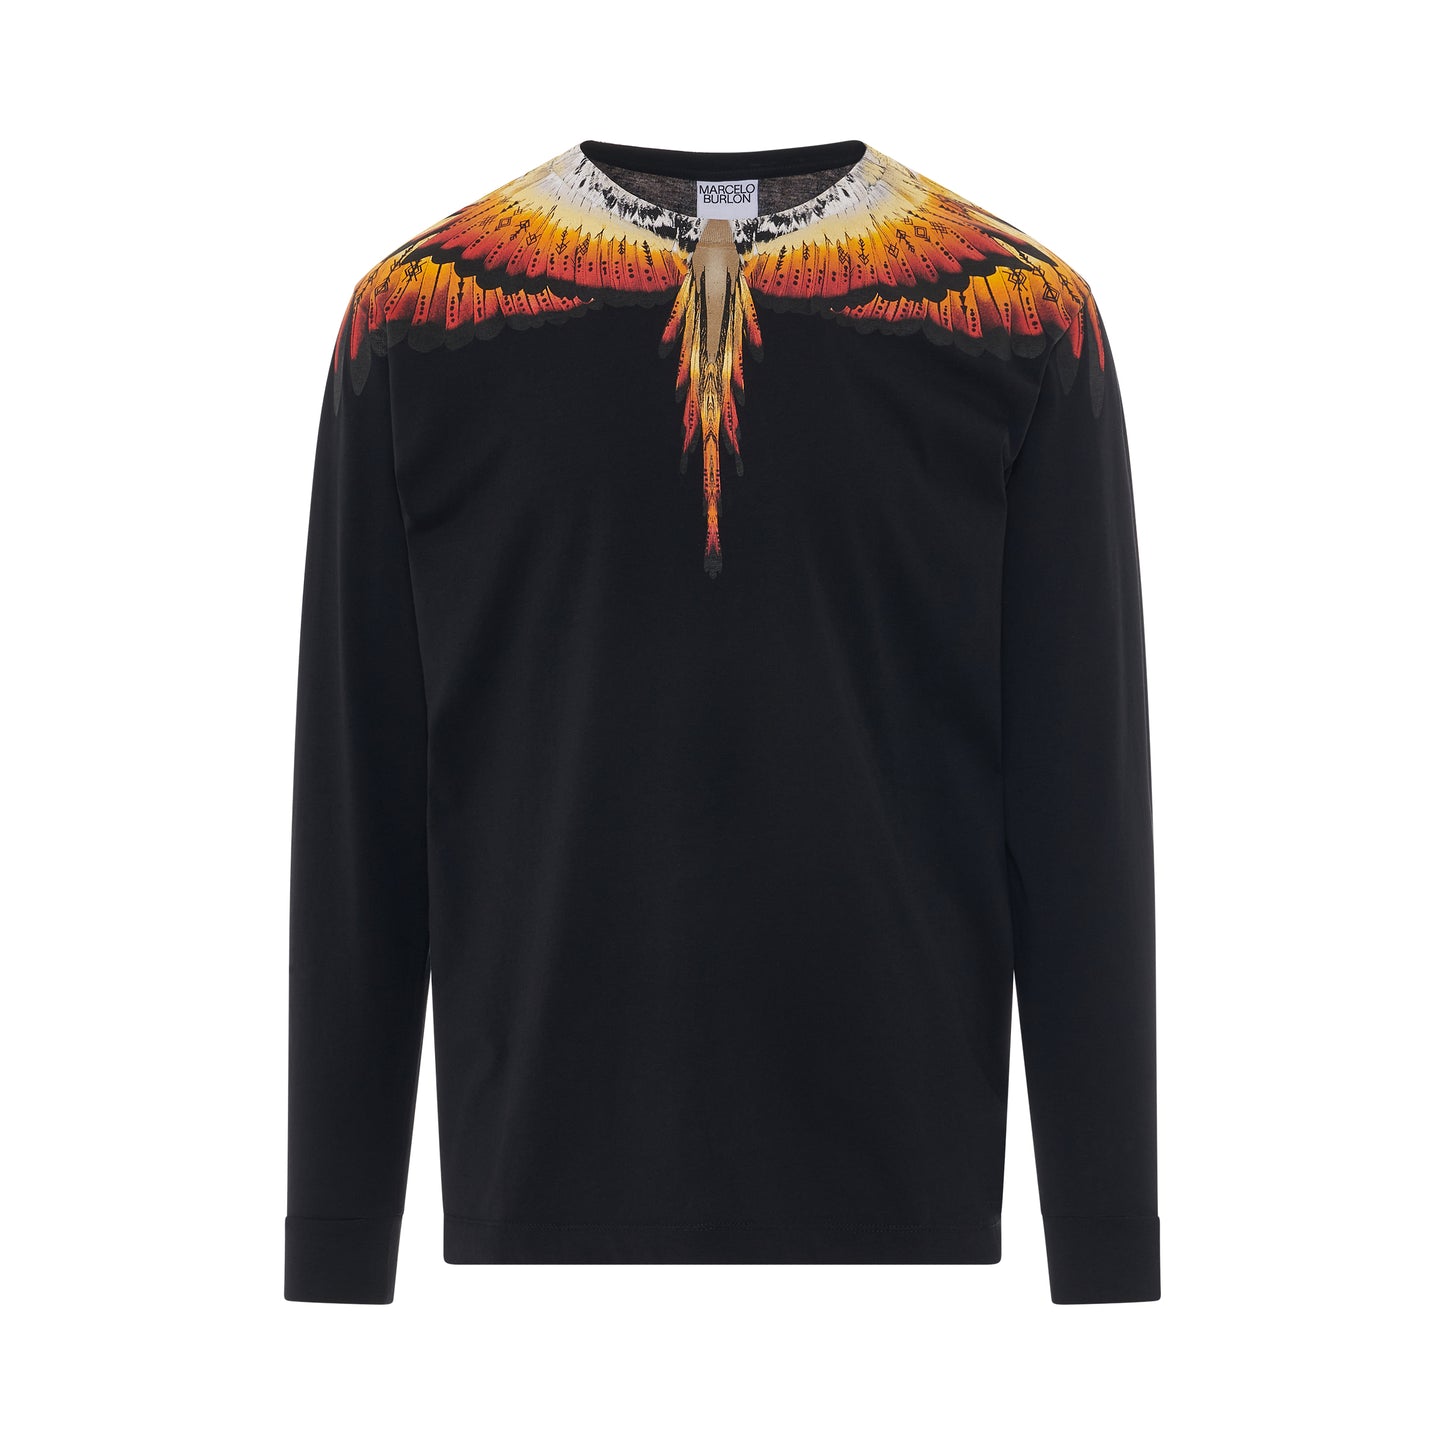 Solfolk Wings Regular Long Sleeve T-Shirt in Black/Red